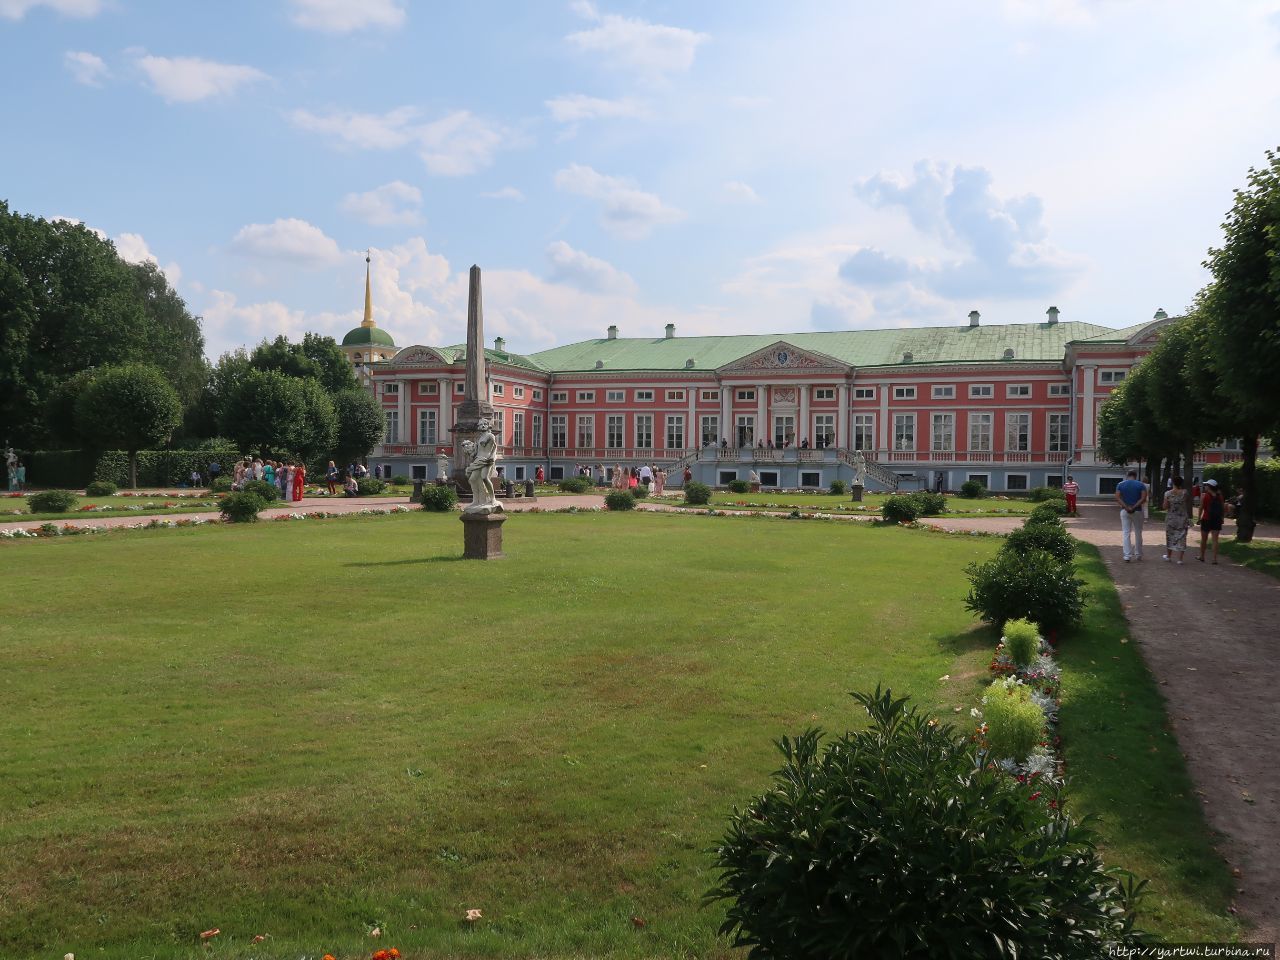 До наших дней сохранилось более 20 уникальных памятников архитектуры, а также единственный в Москве французский регулярный парк усадьбы с мраморной скульптурой, прудами и павильонами. Фрагмент парка за центральным дворцом. Москва, Россия